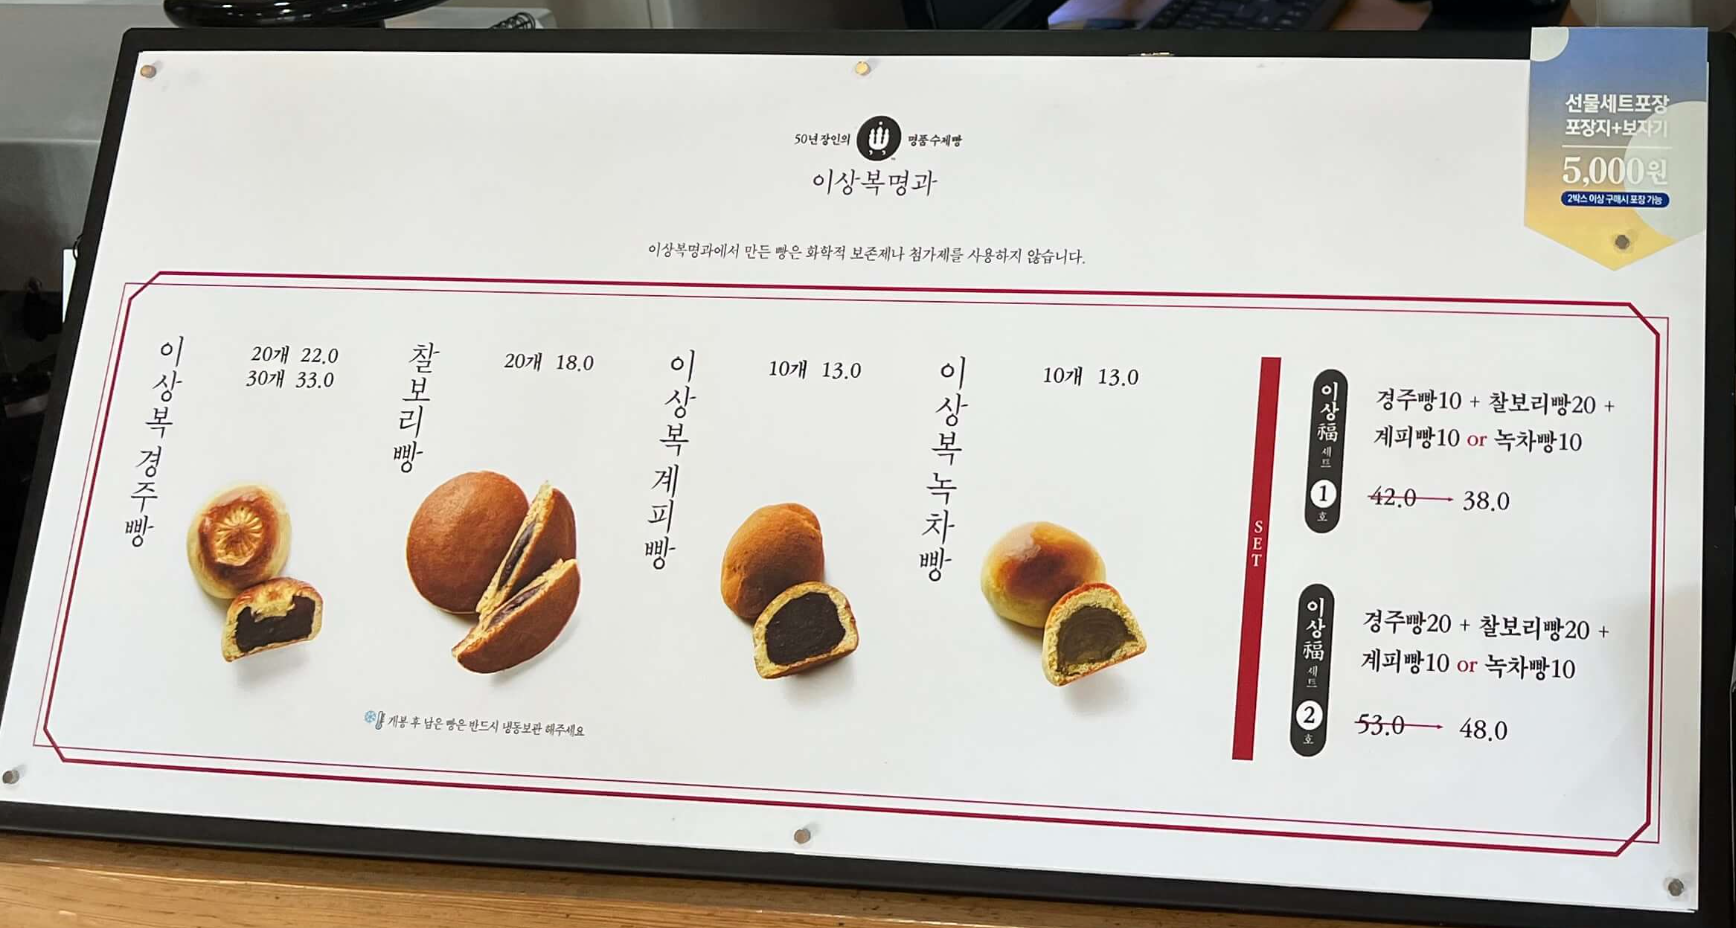 민수랜드-이상복명가 경주빵 메뉴구성표